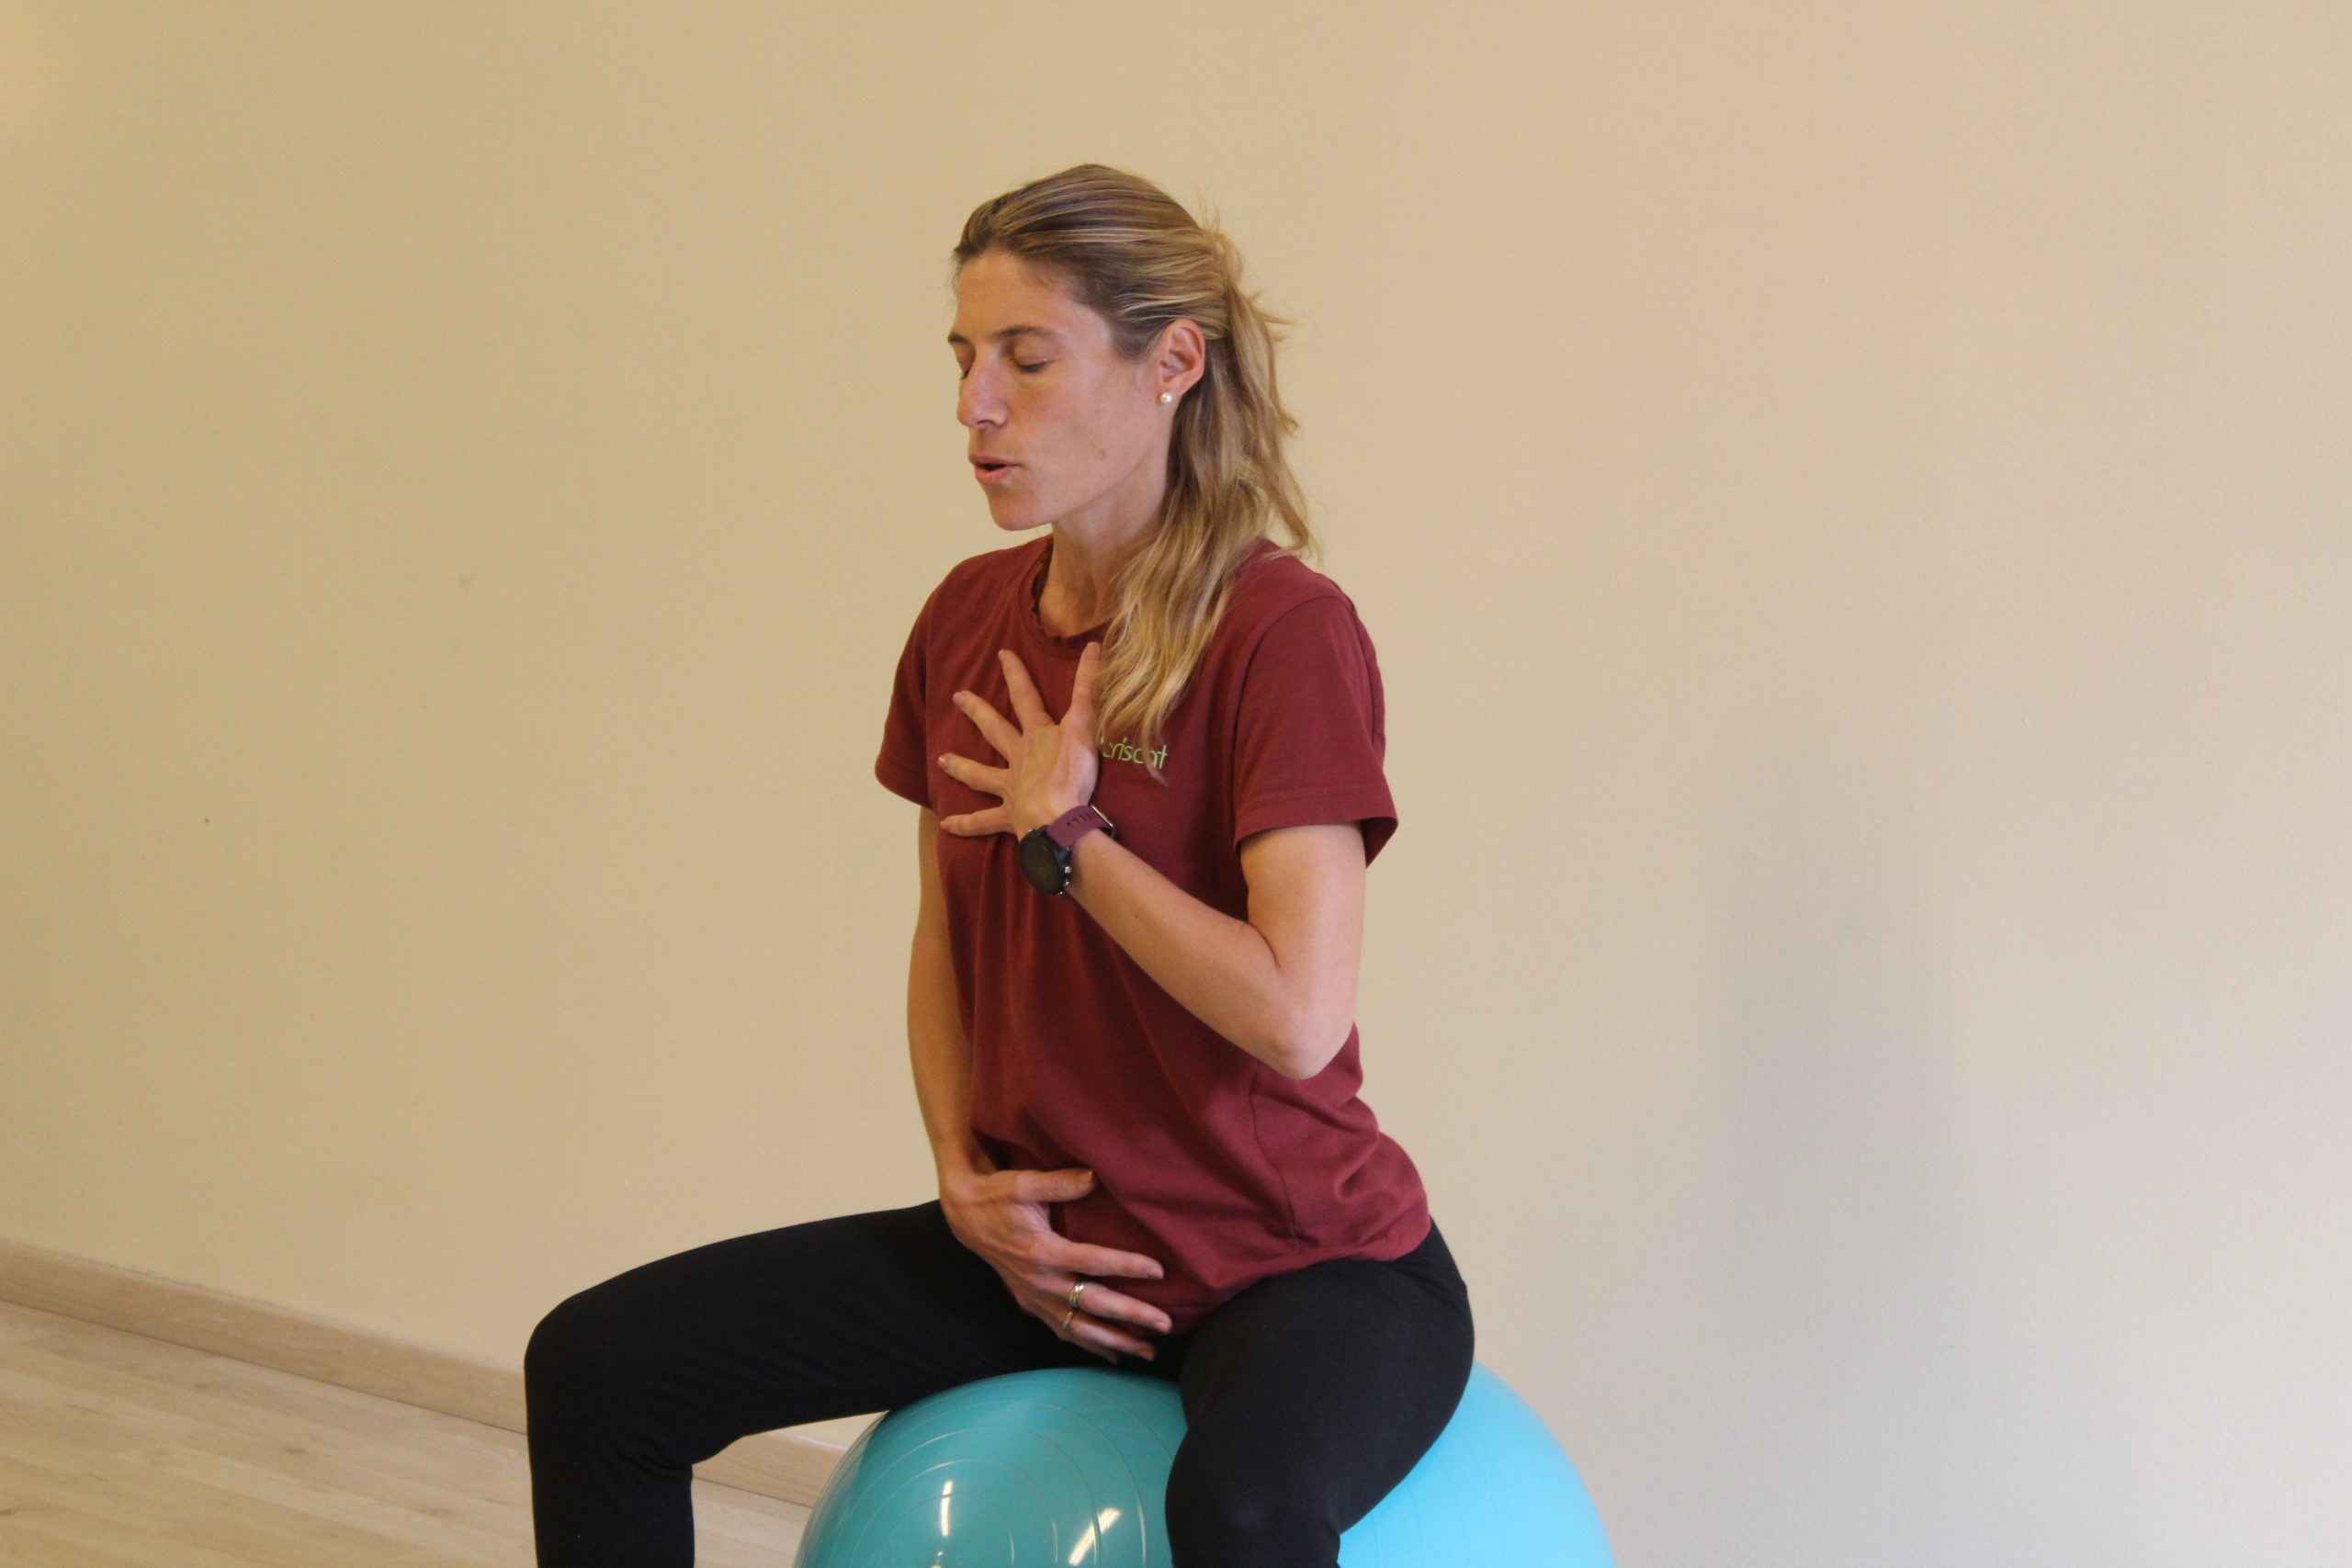 ejercicios de corrección postural y respiración